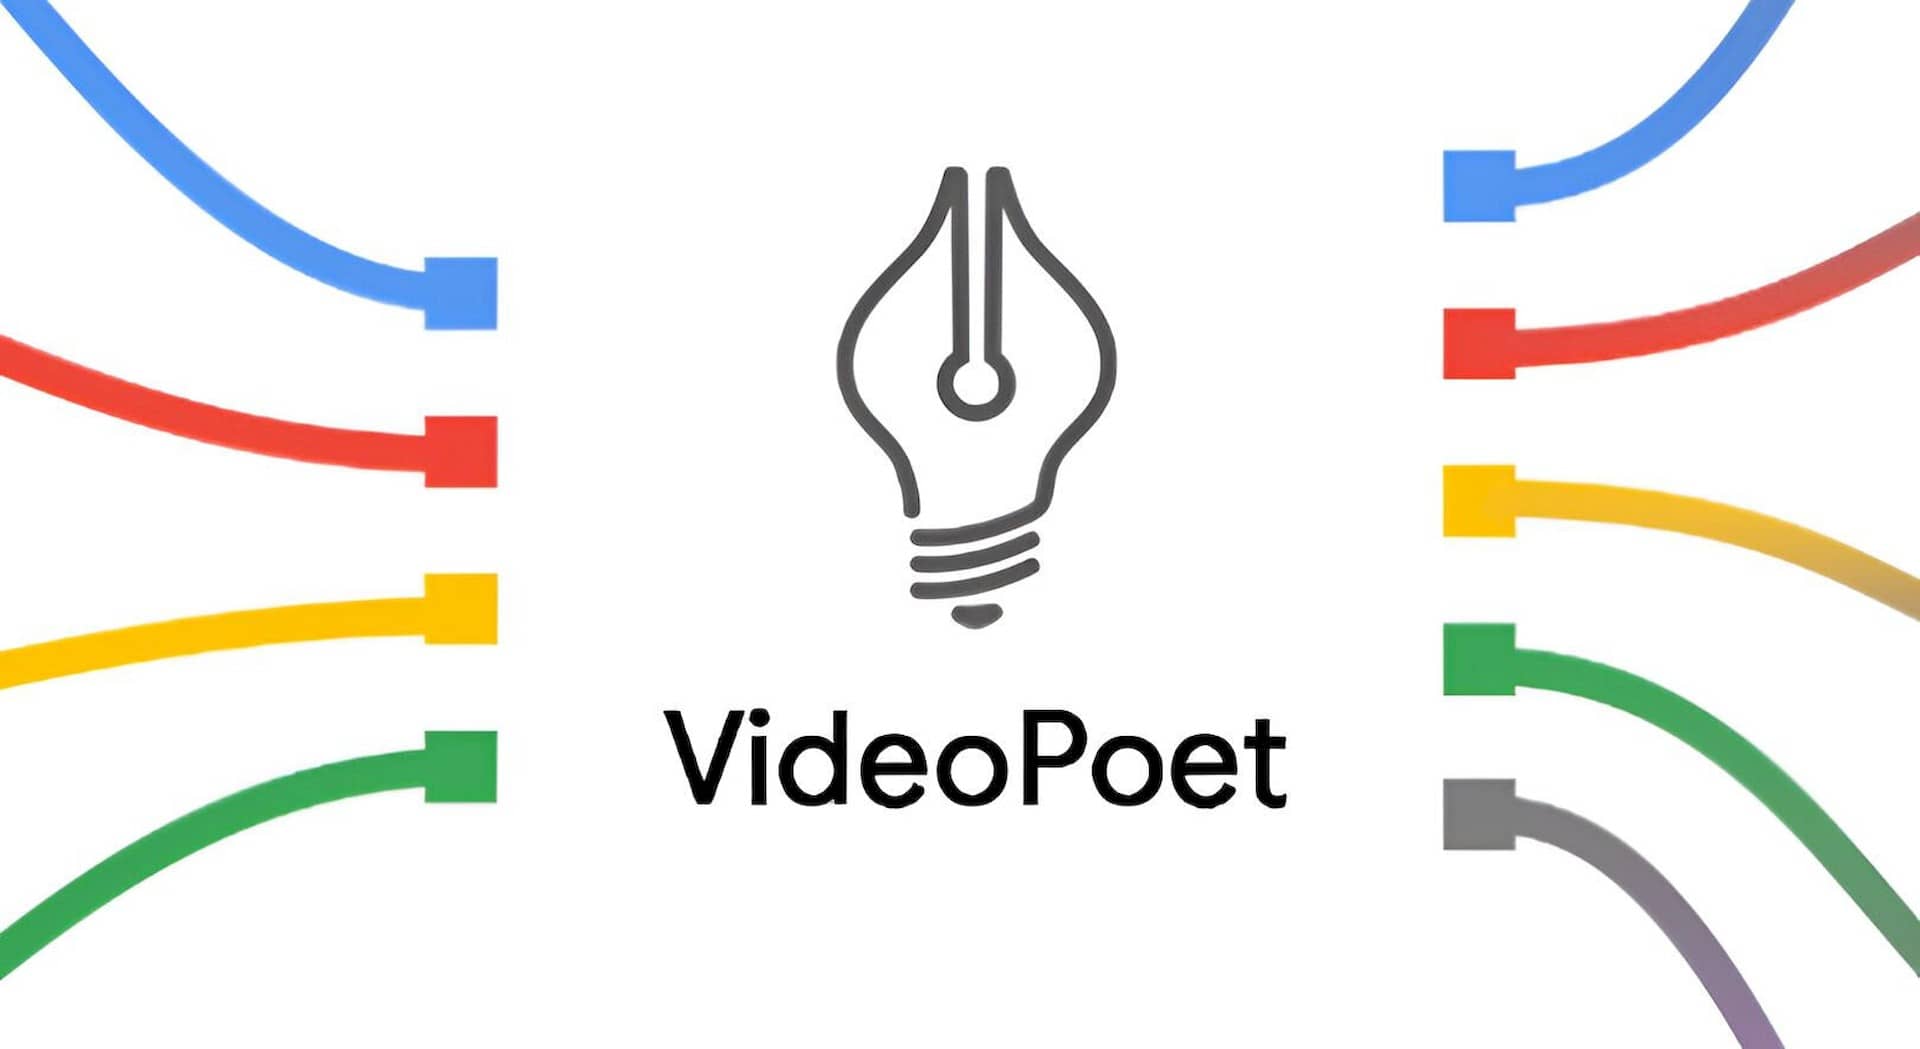 VideoPoet Google